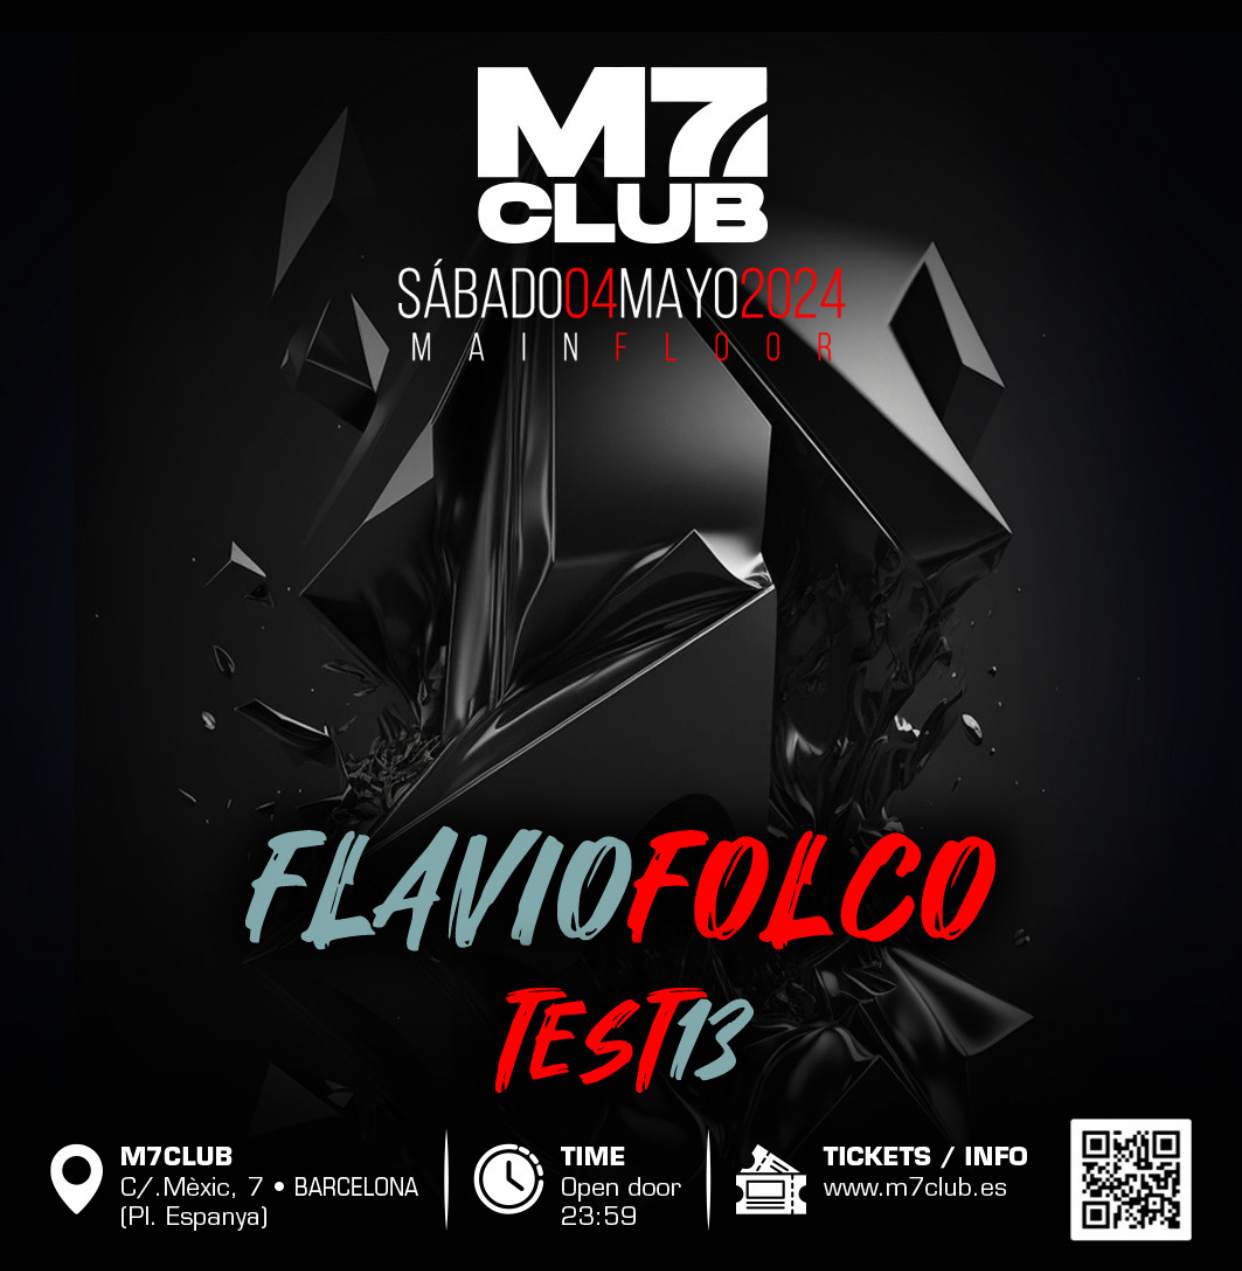 M7 SATURDAY [Flavio Folco & Test13] - フライヤー表